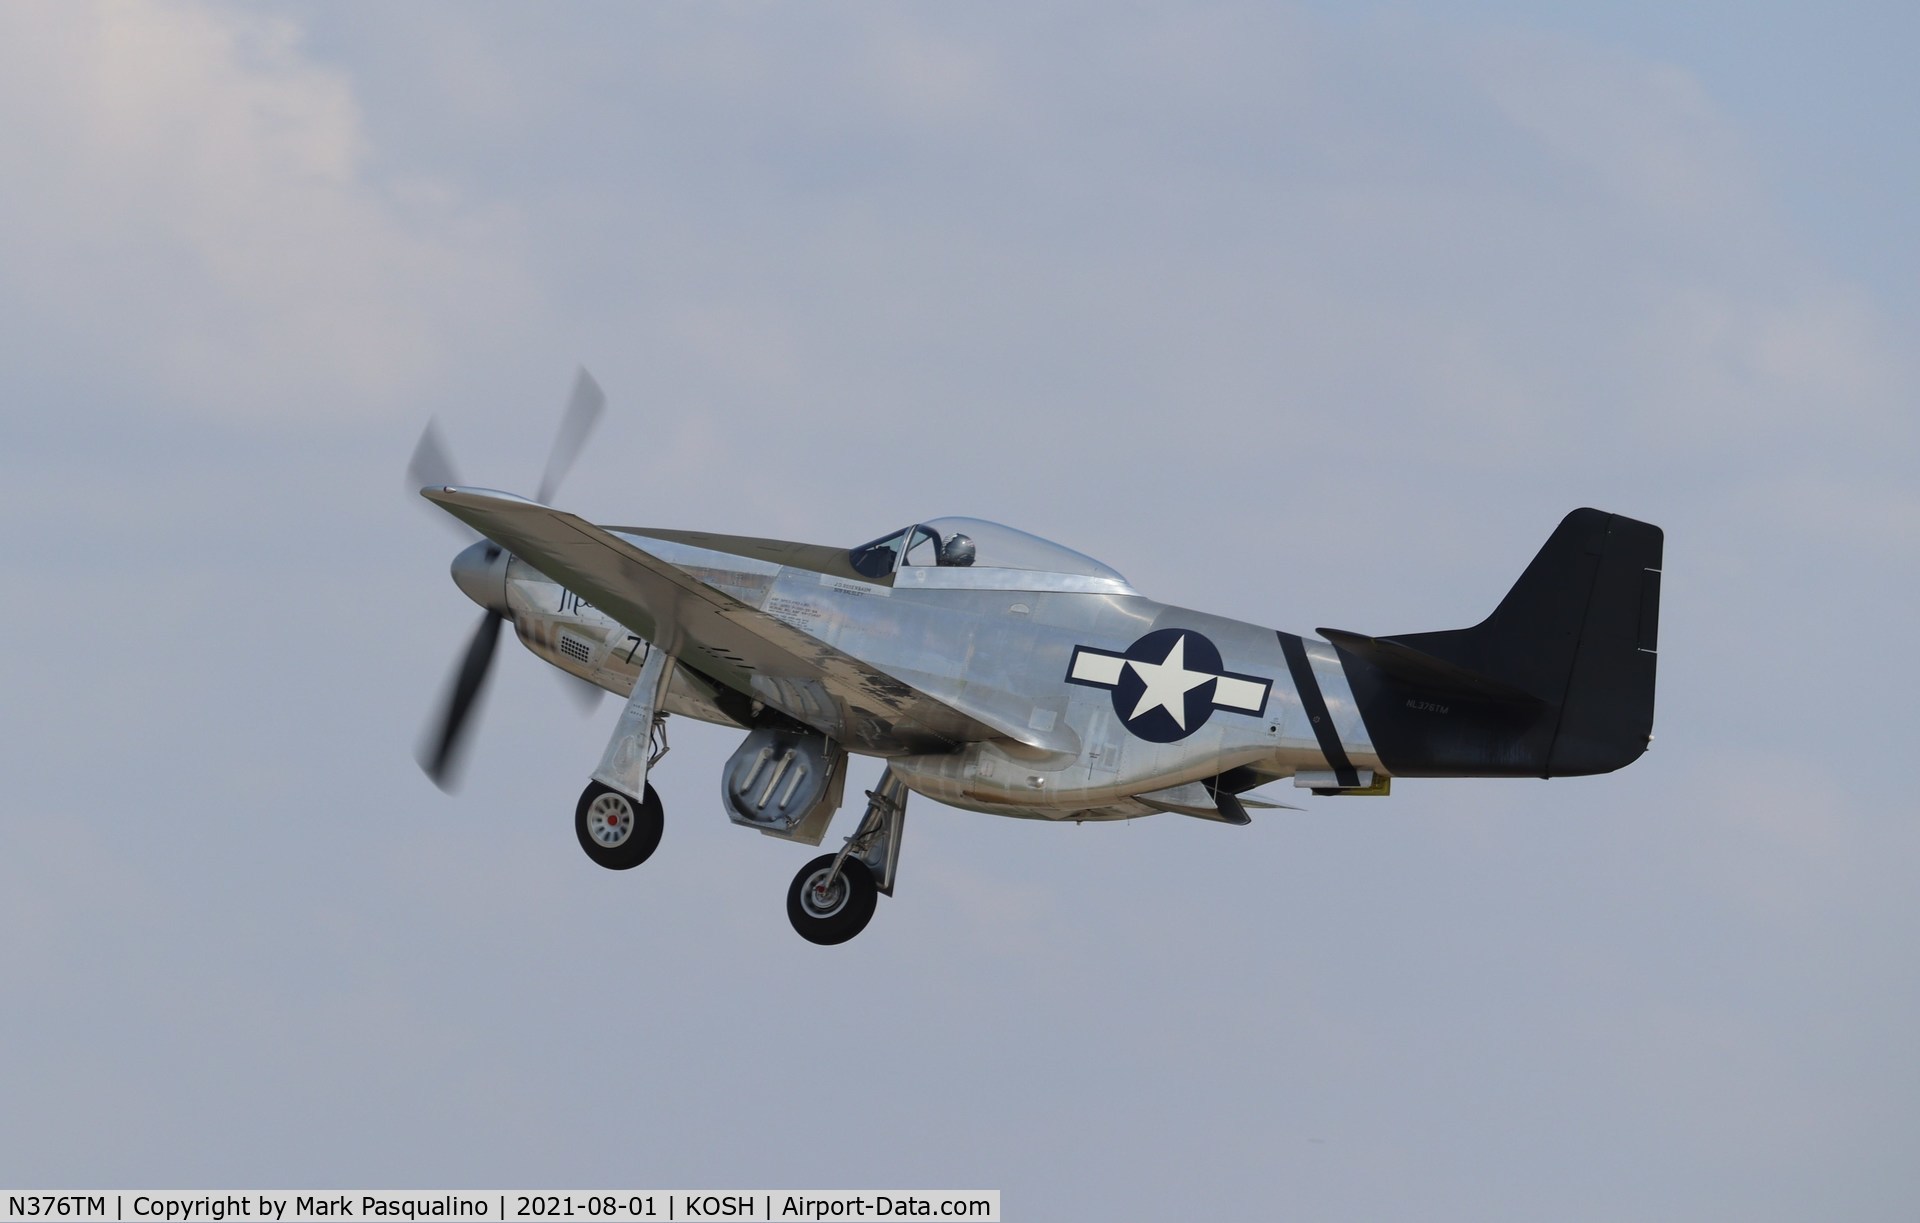 N376TM, North American P-51D Mustang C/N 122-39896, North American P-51D